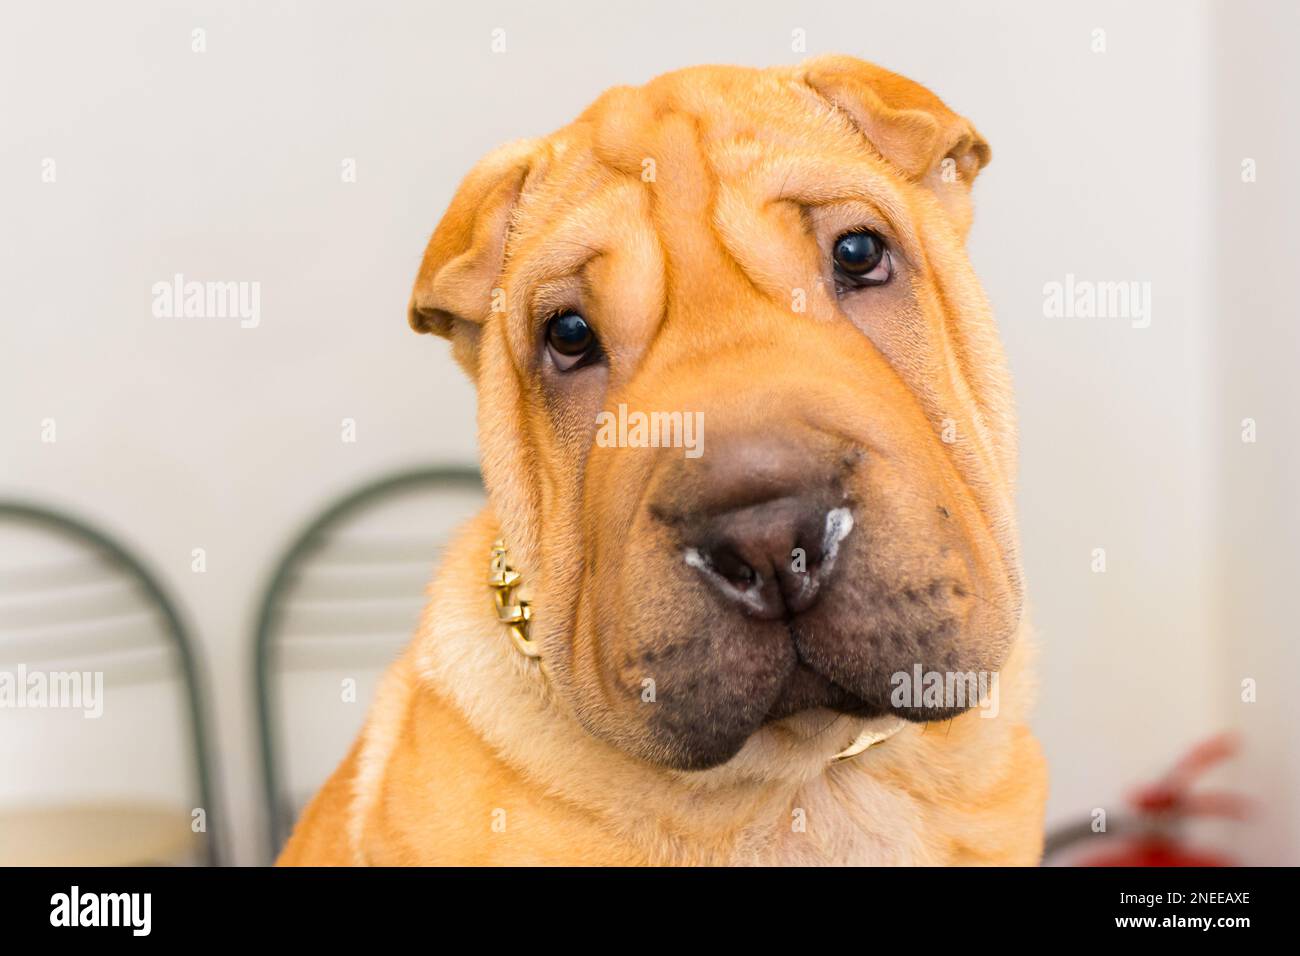 dog at the veterinary clinic Stock Photo